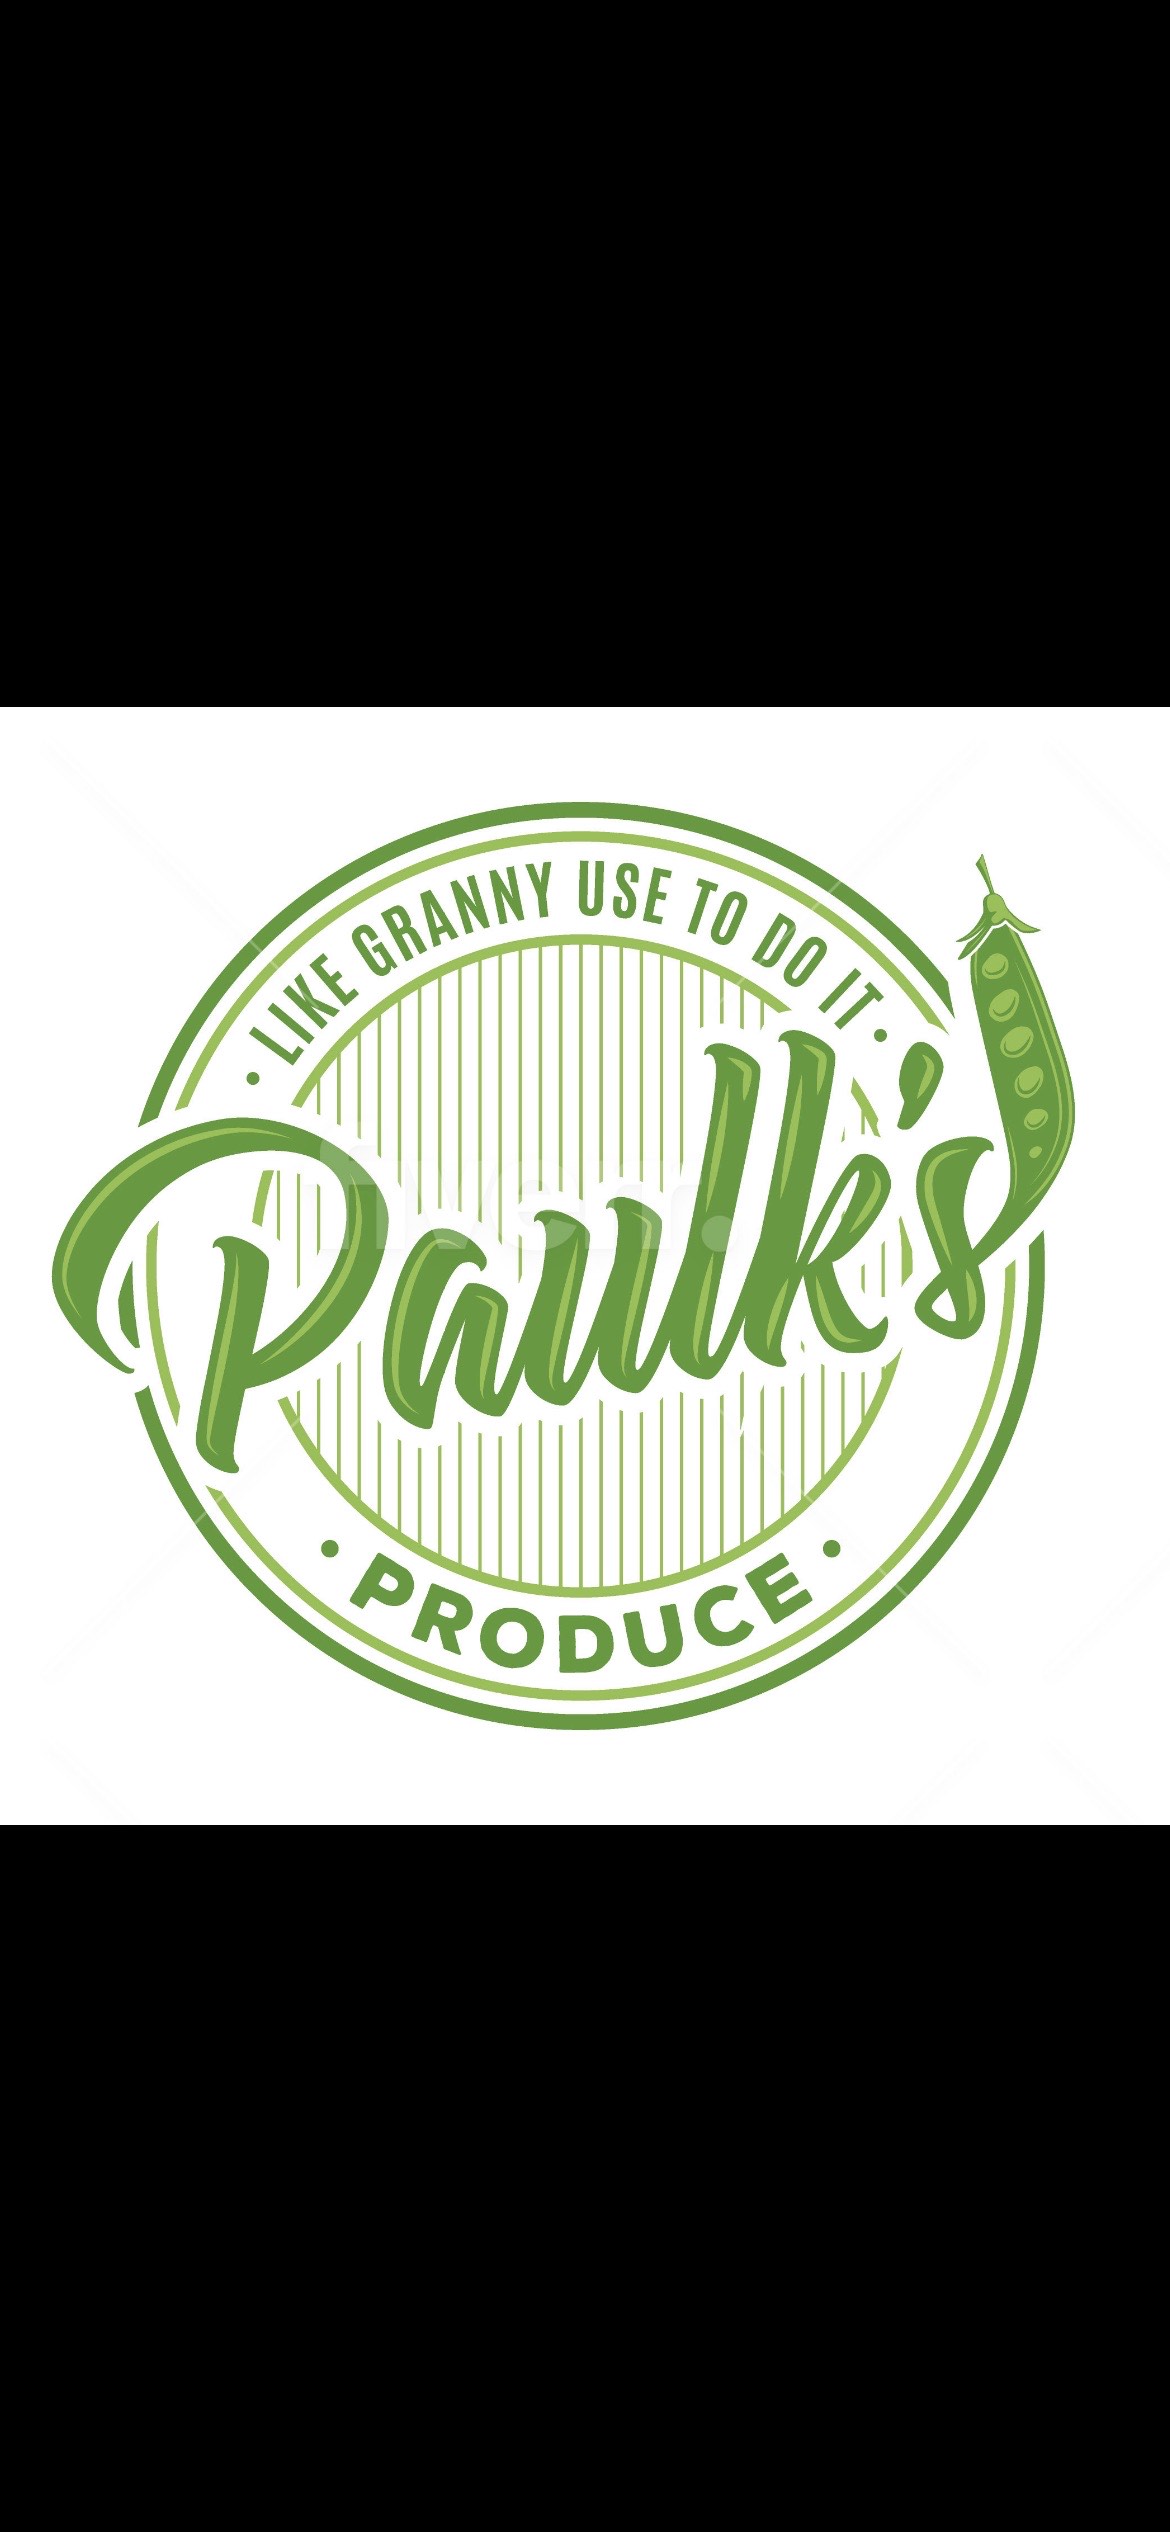 Paulk’s Produce